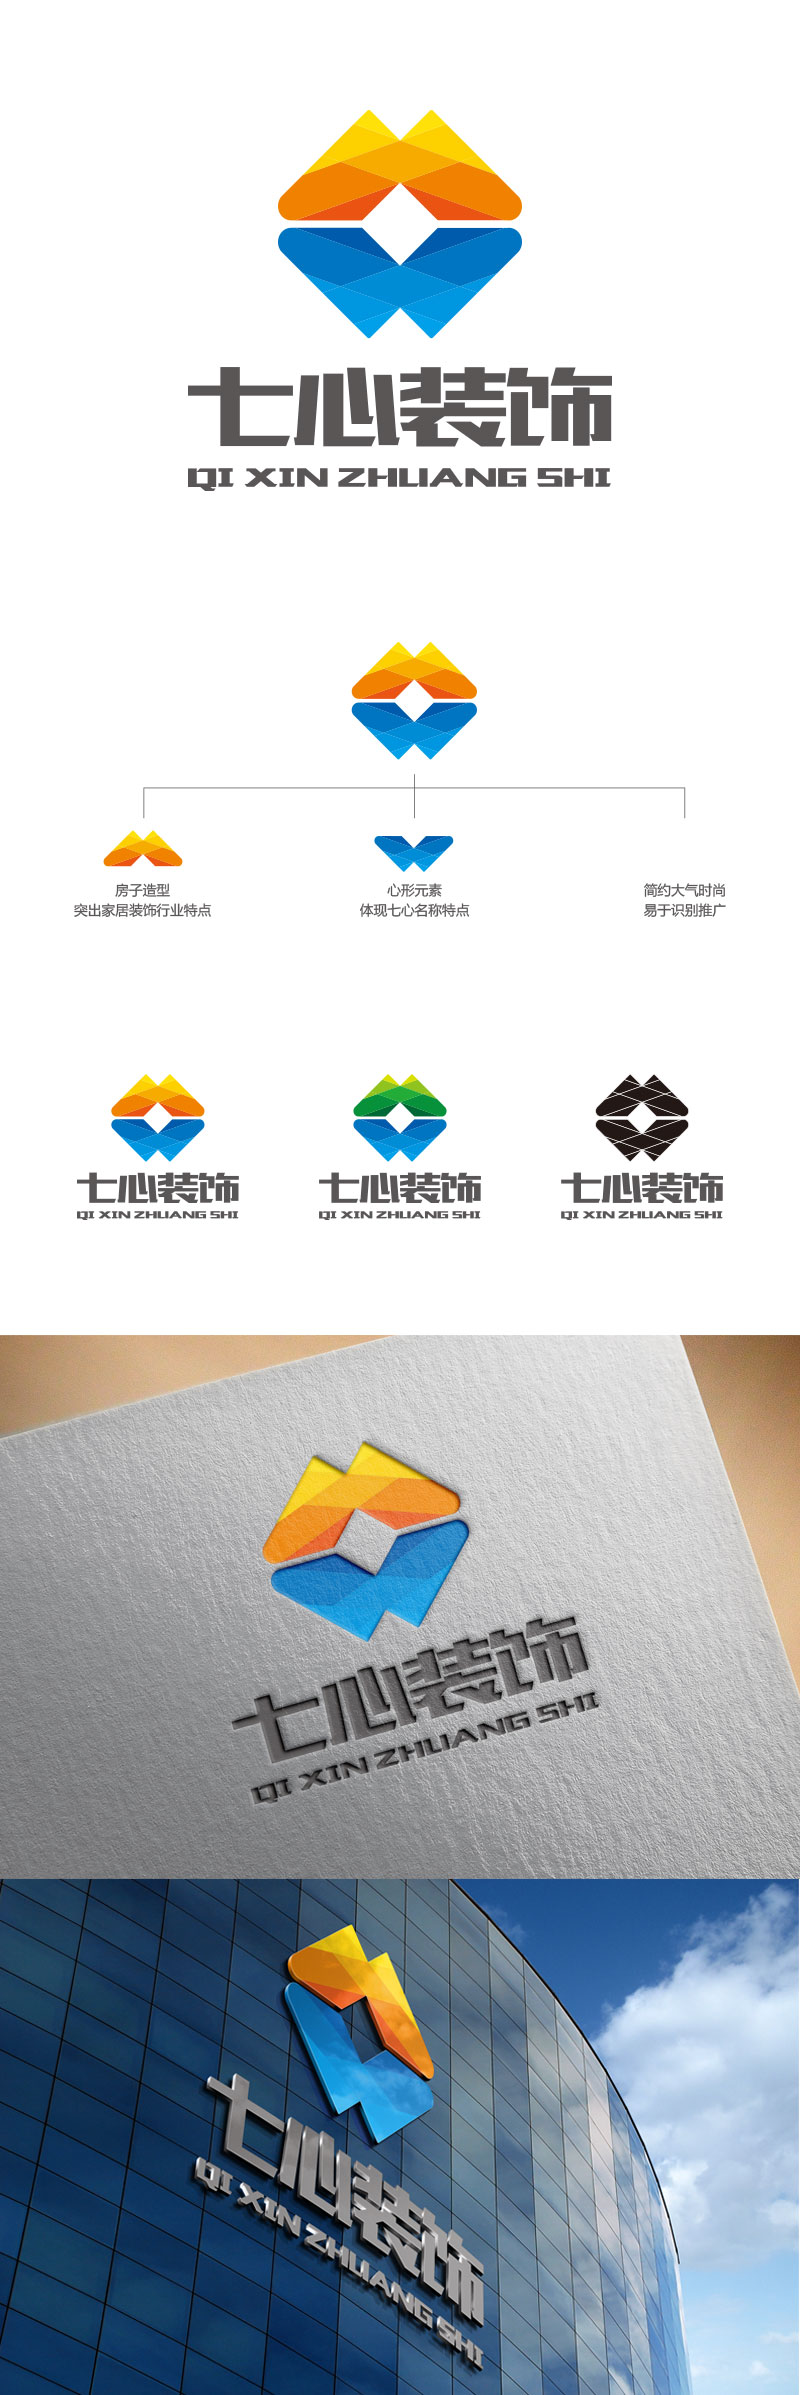 孙金泽的昆明七心装饰设计有限公司logo设计